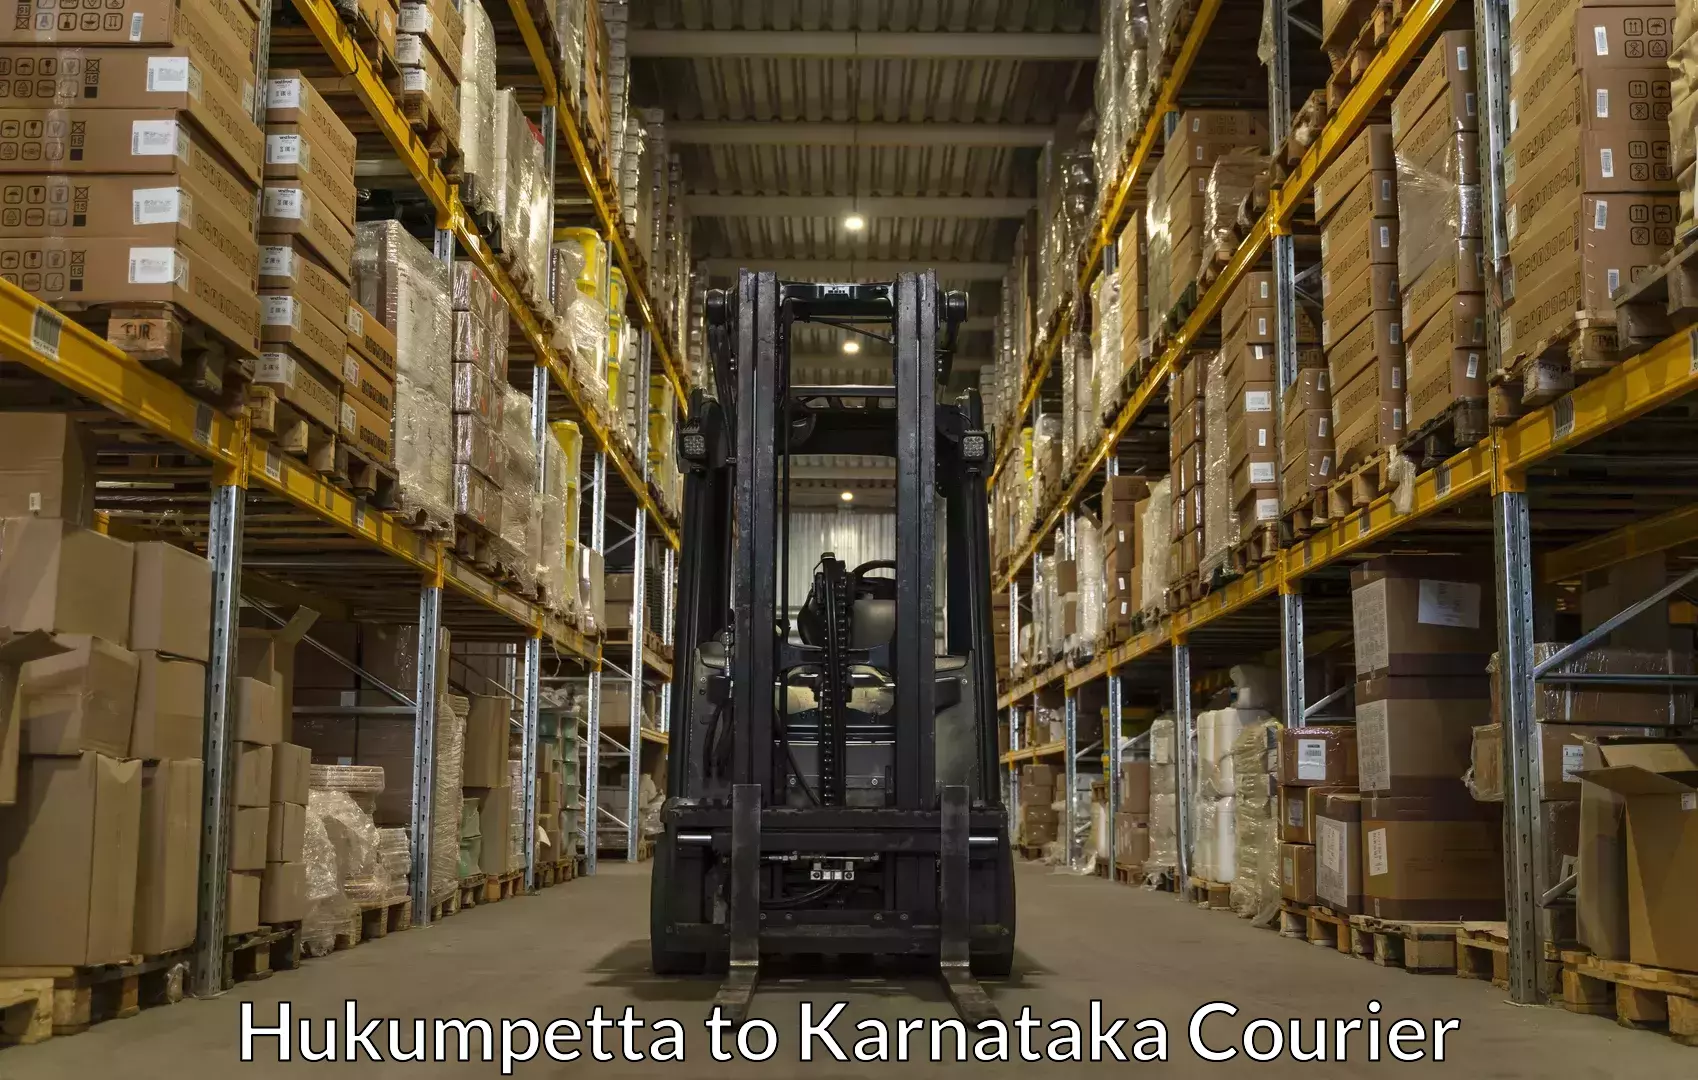 Trusted household movers Hukumpetta to Karnataka